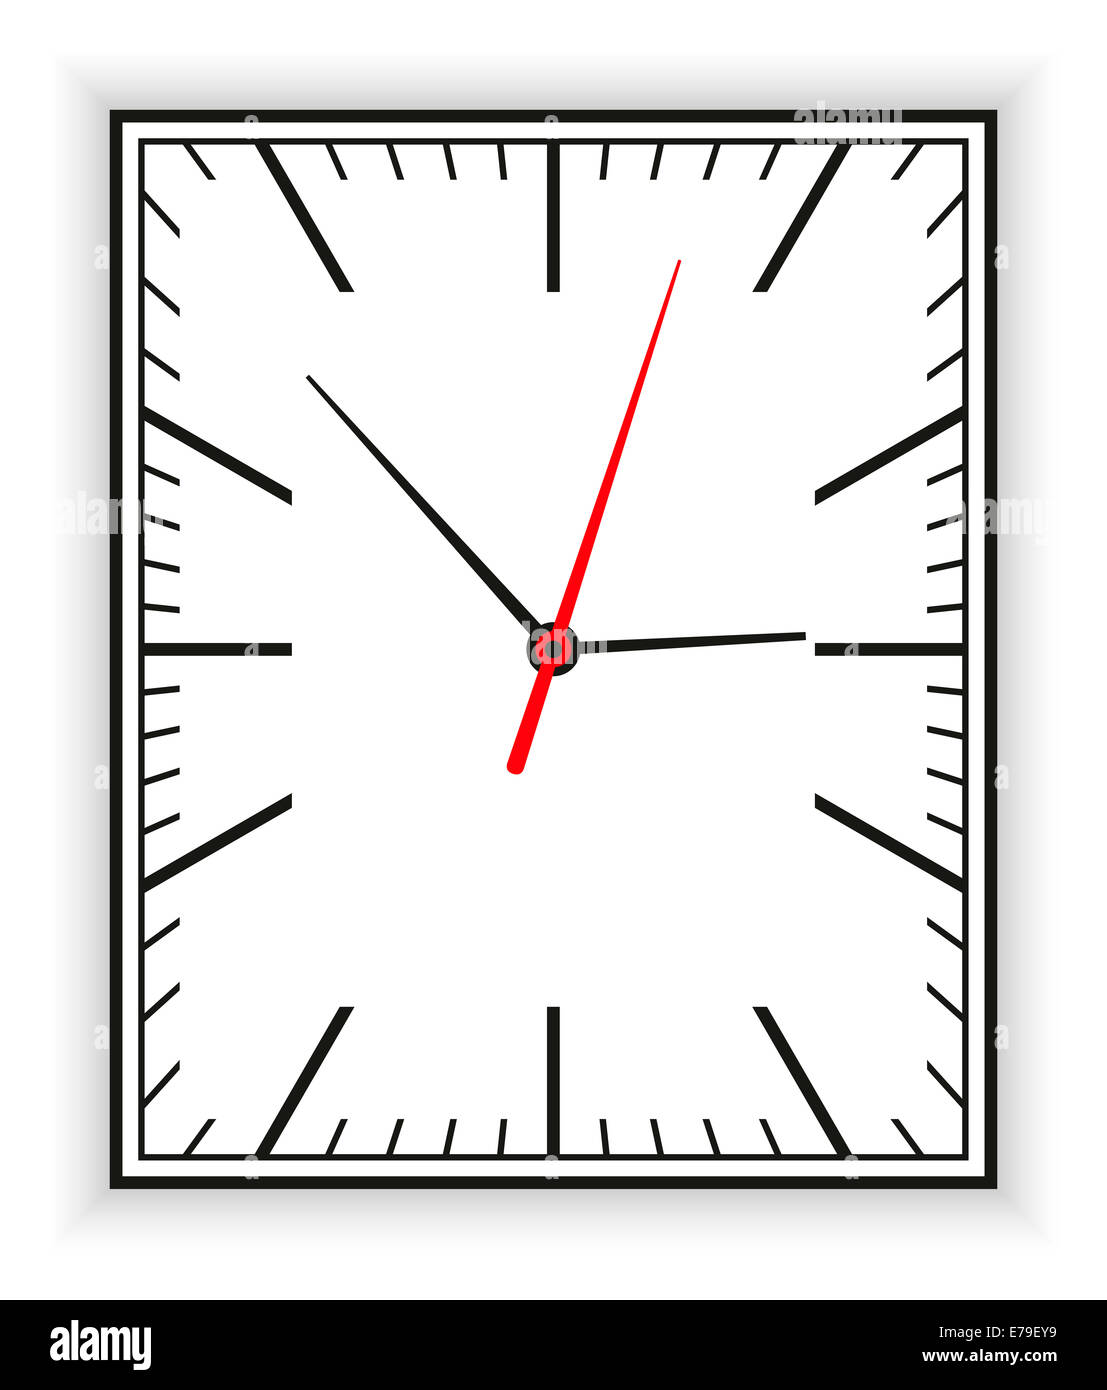 Horloge rectangulaire dans le cadre d'une horloge analogique avec des pointeurs noir et rouge. Illustration sur fond blanc. Banque D'Images